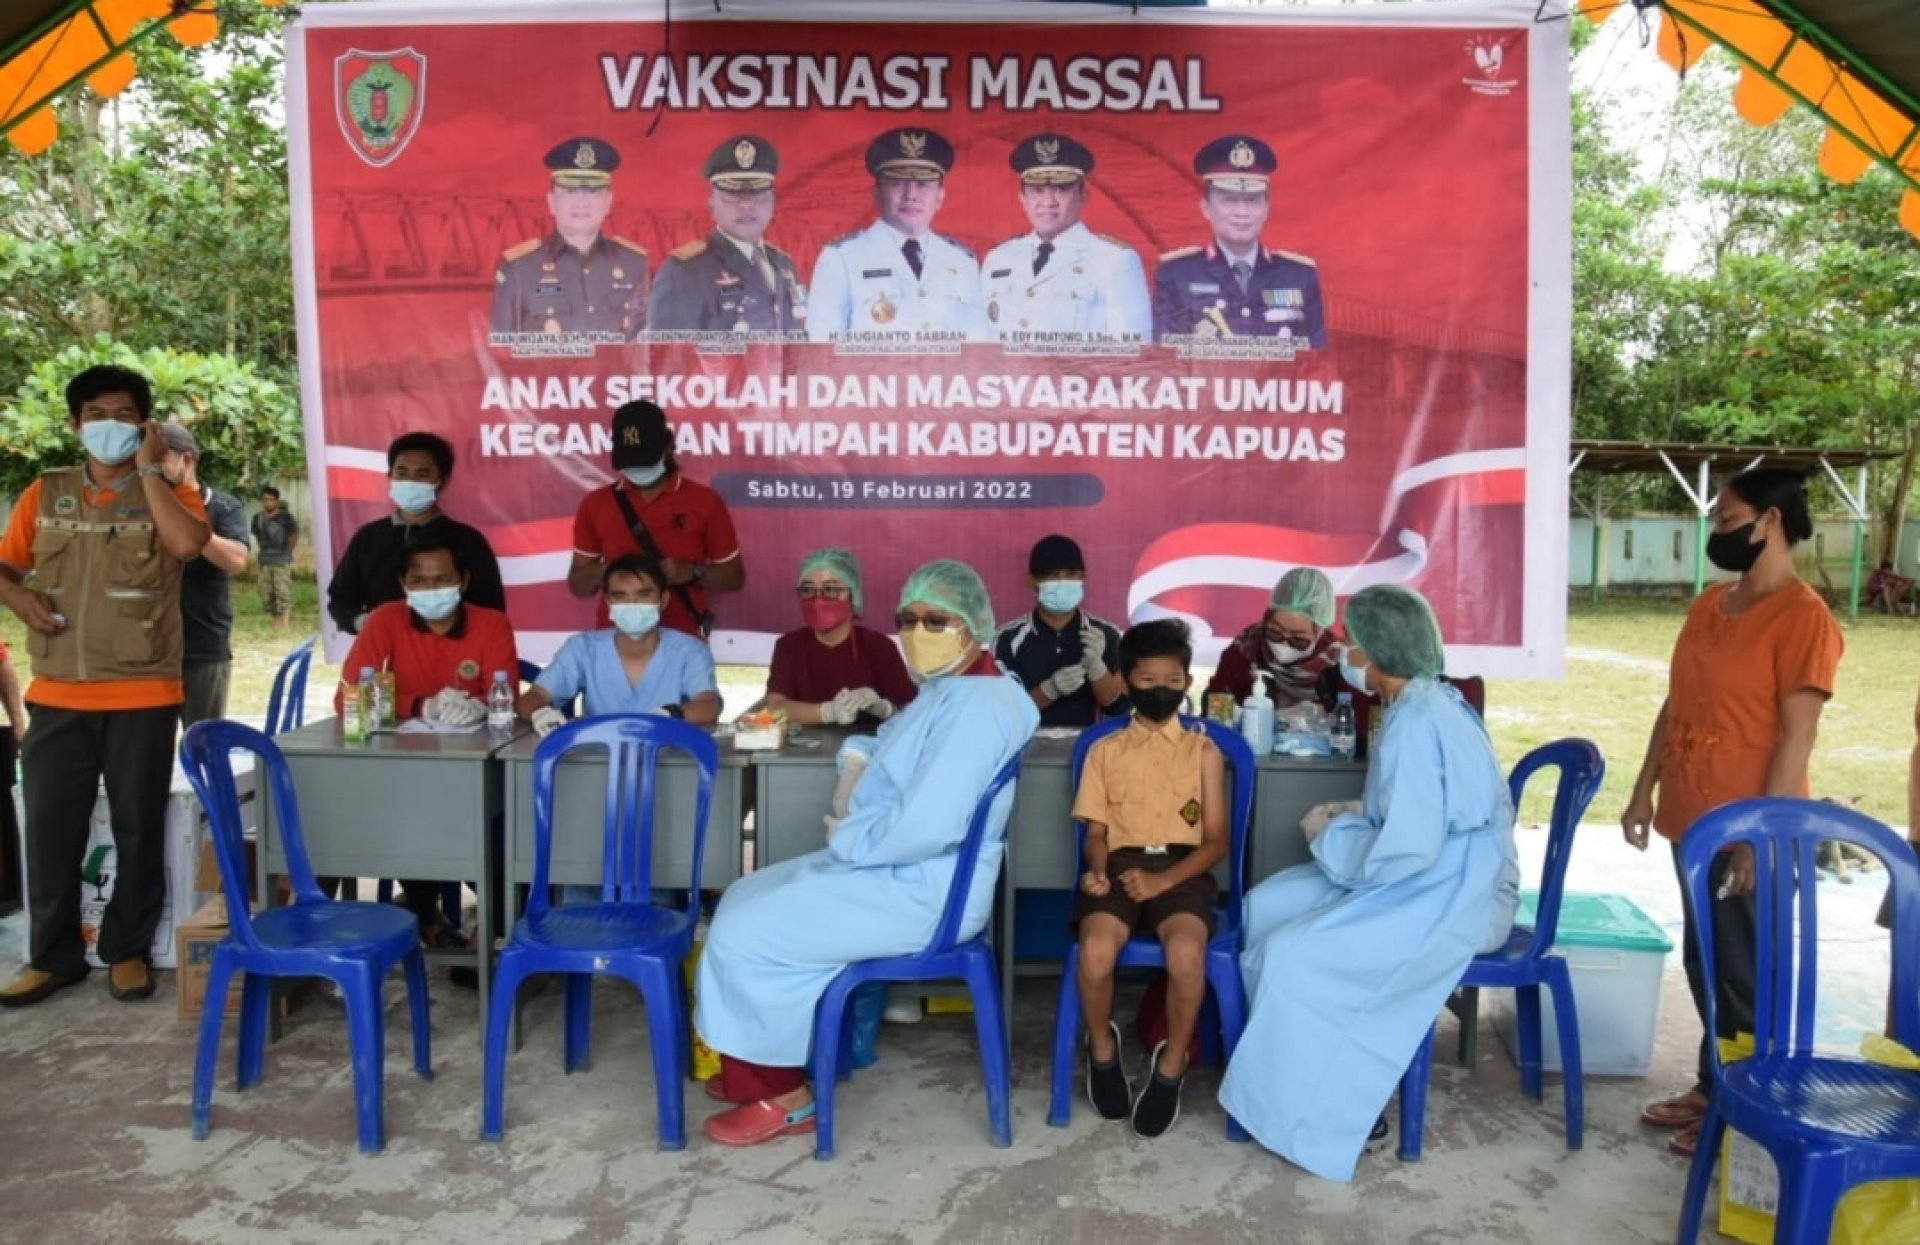 Dorong Percepatan Vaksinasi COVID-19, Pemprov Kalteng Gelar Vaksinasi bagi Pelajar dan Masyarakat Umum di Kabupaten Kapuas